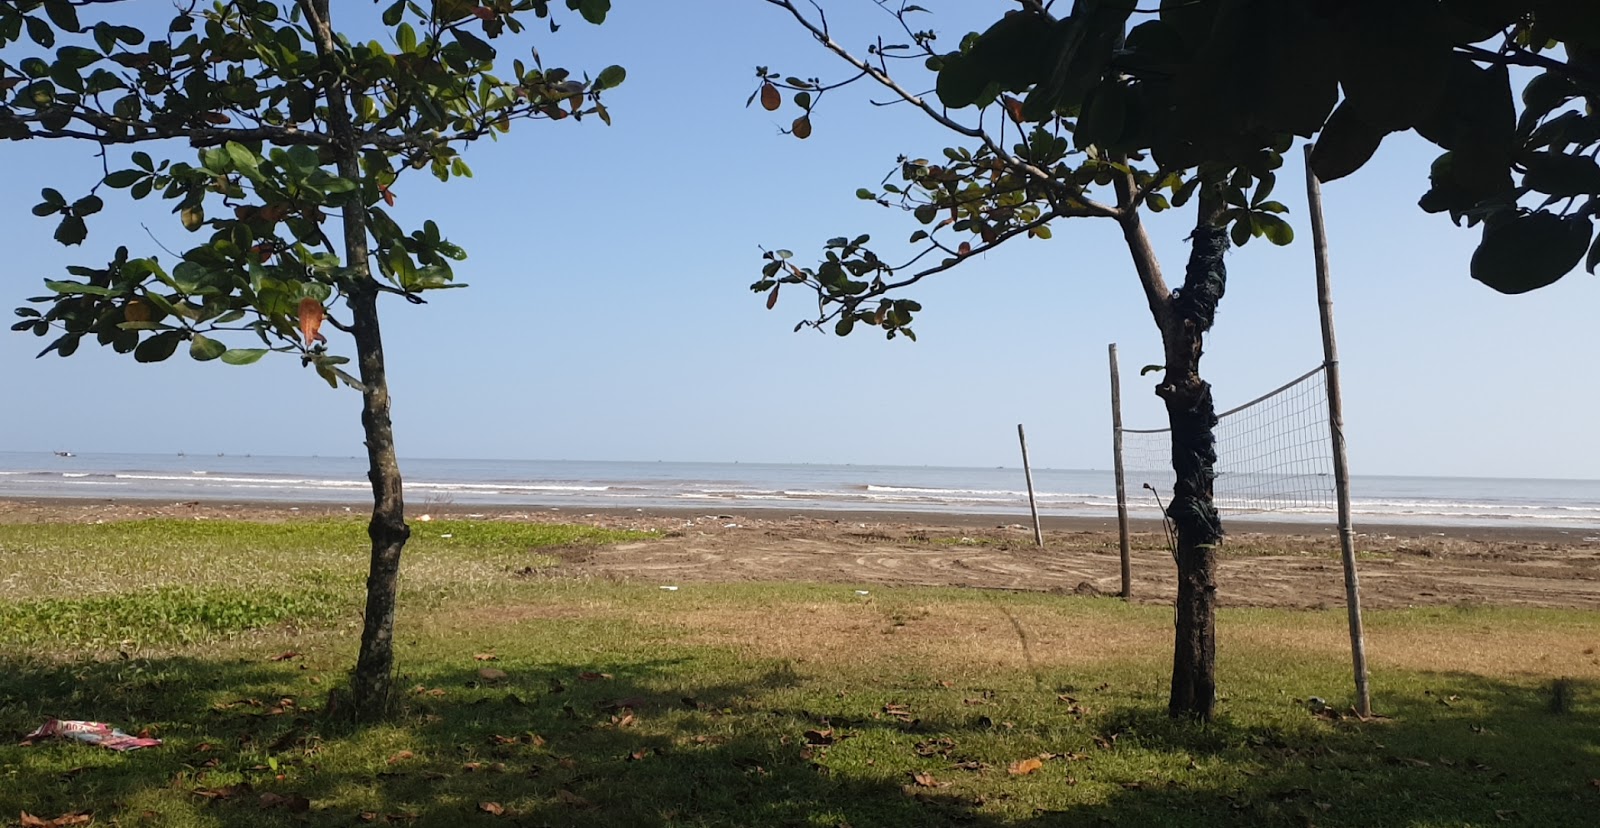 Foto de Dien Thanh Beach - lugar popular entre los conocedores del relax